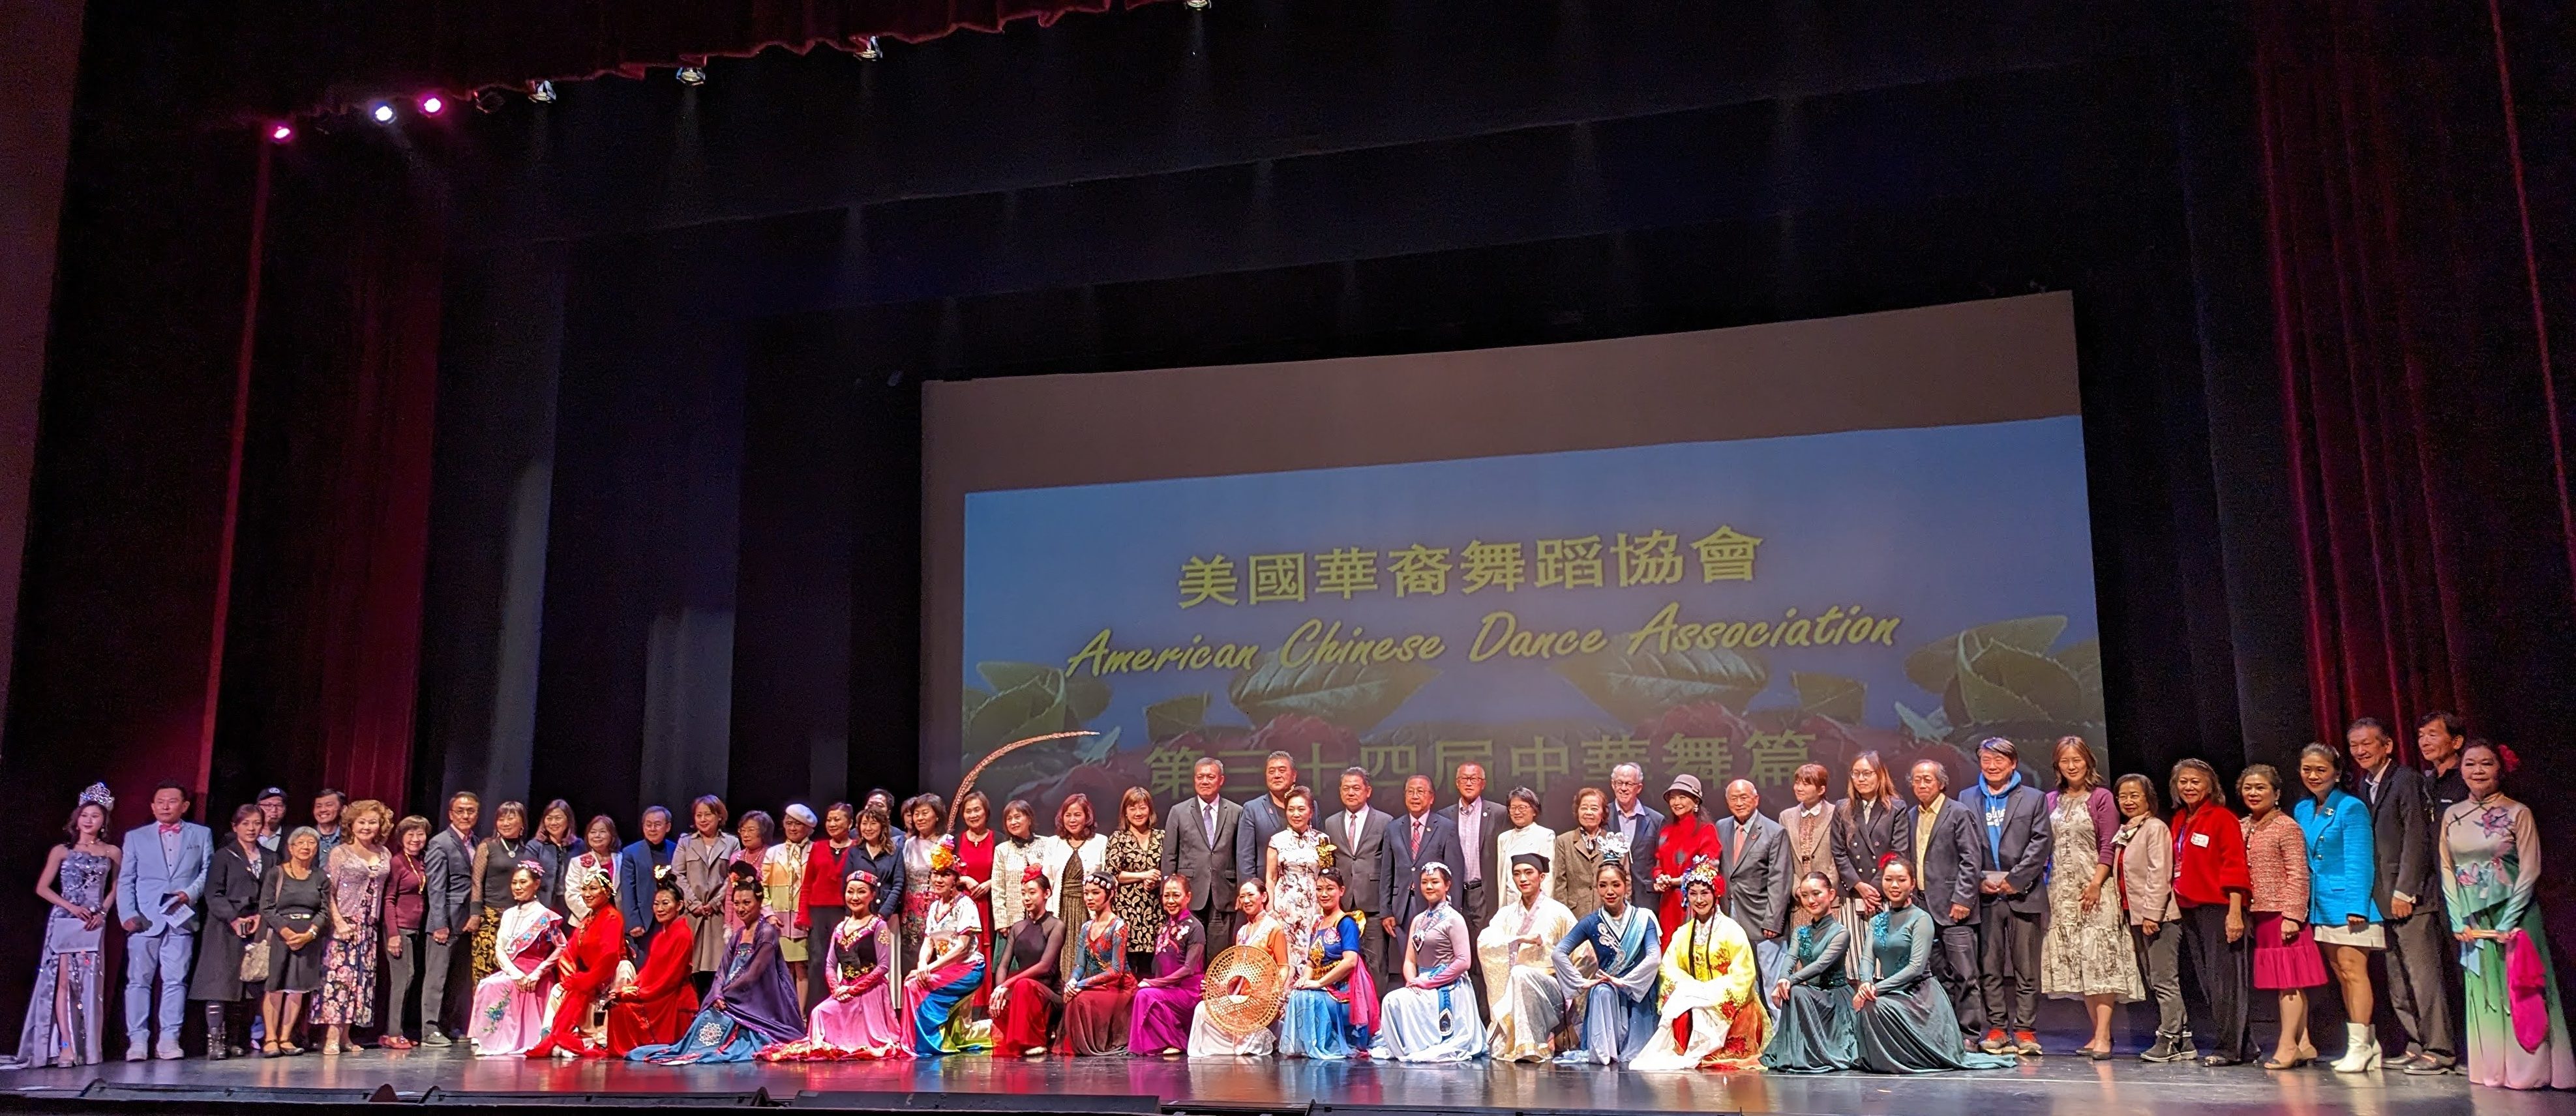 中華舞篇展現民族舞特色 藏人彎腰維族仰頭